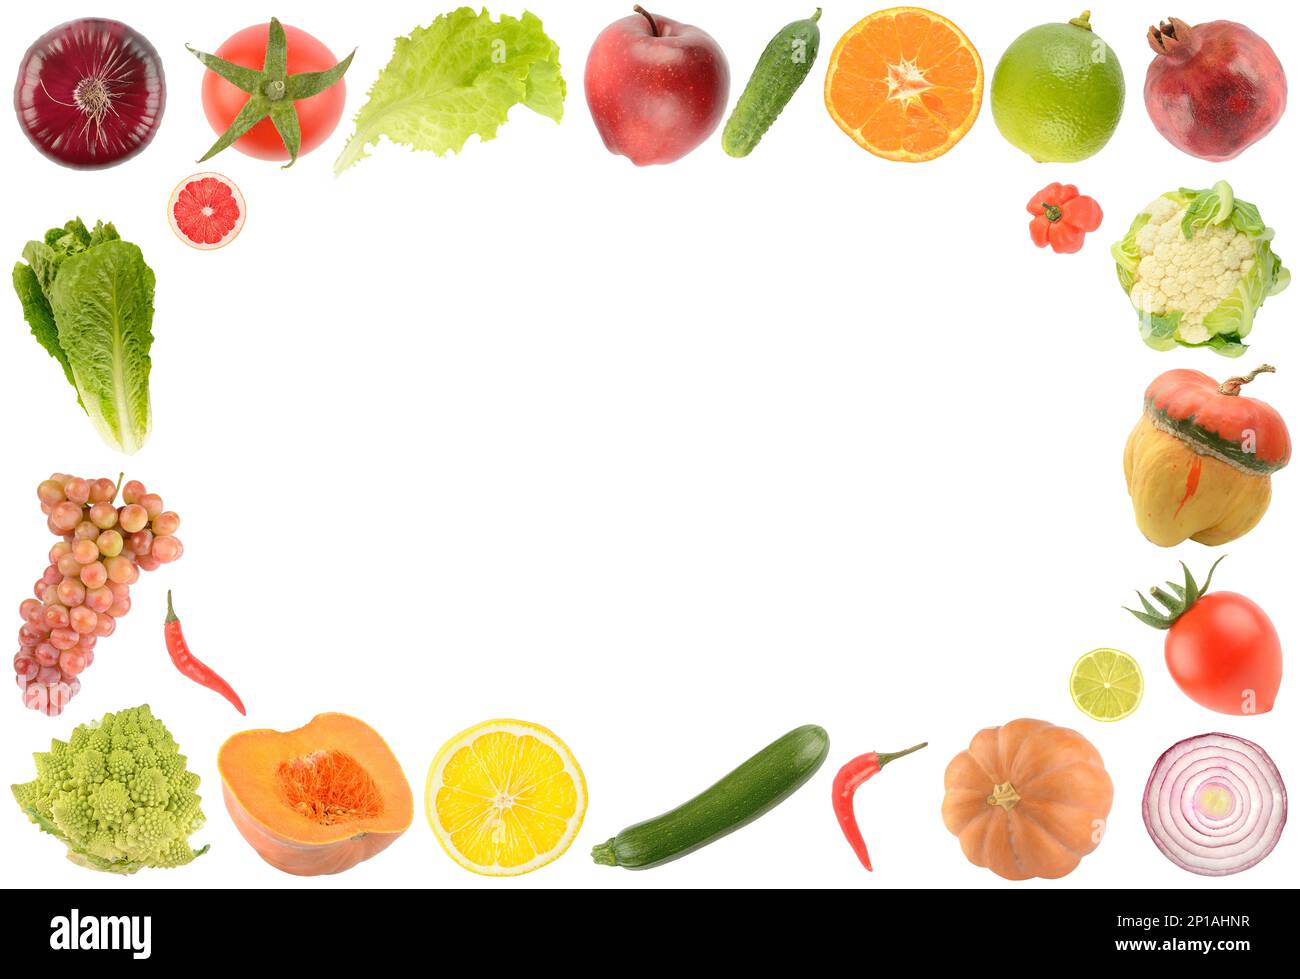 Cadrez les fruits, légumes et baies frais isolés sur fond blanc. Espace libre pour le texte. Banque D'Images